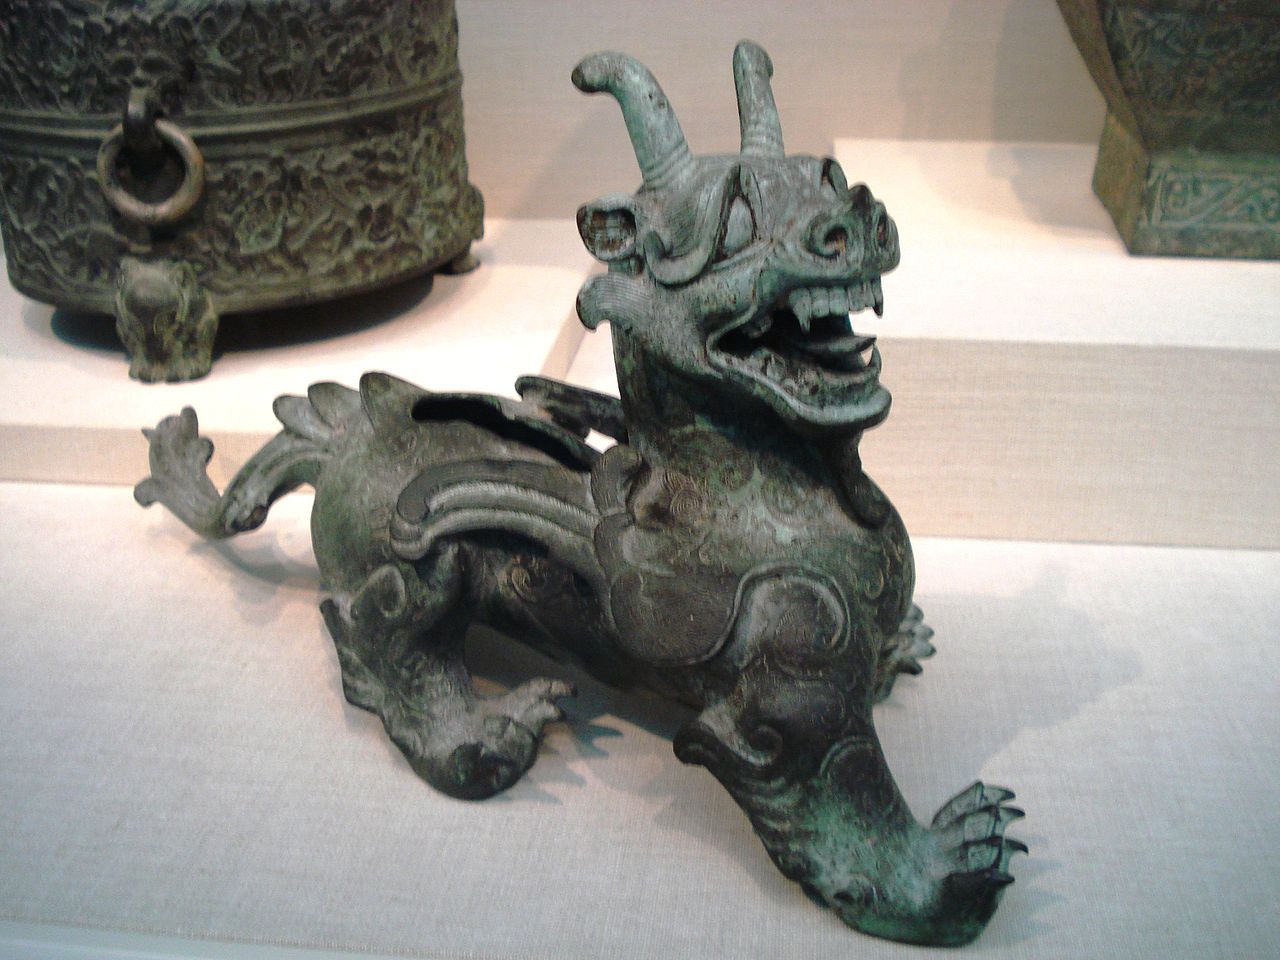 et af de mest berømte kunstværker fra Han-dynastiets tid